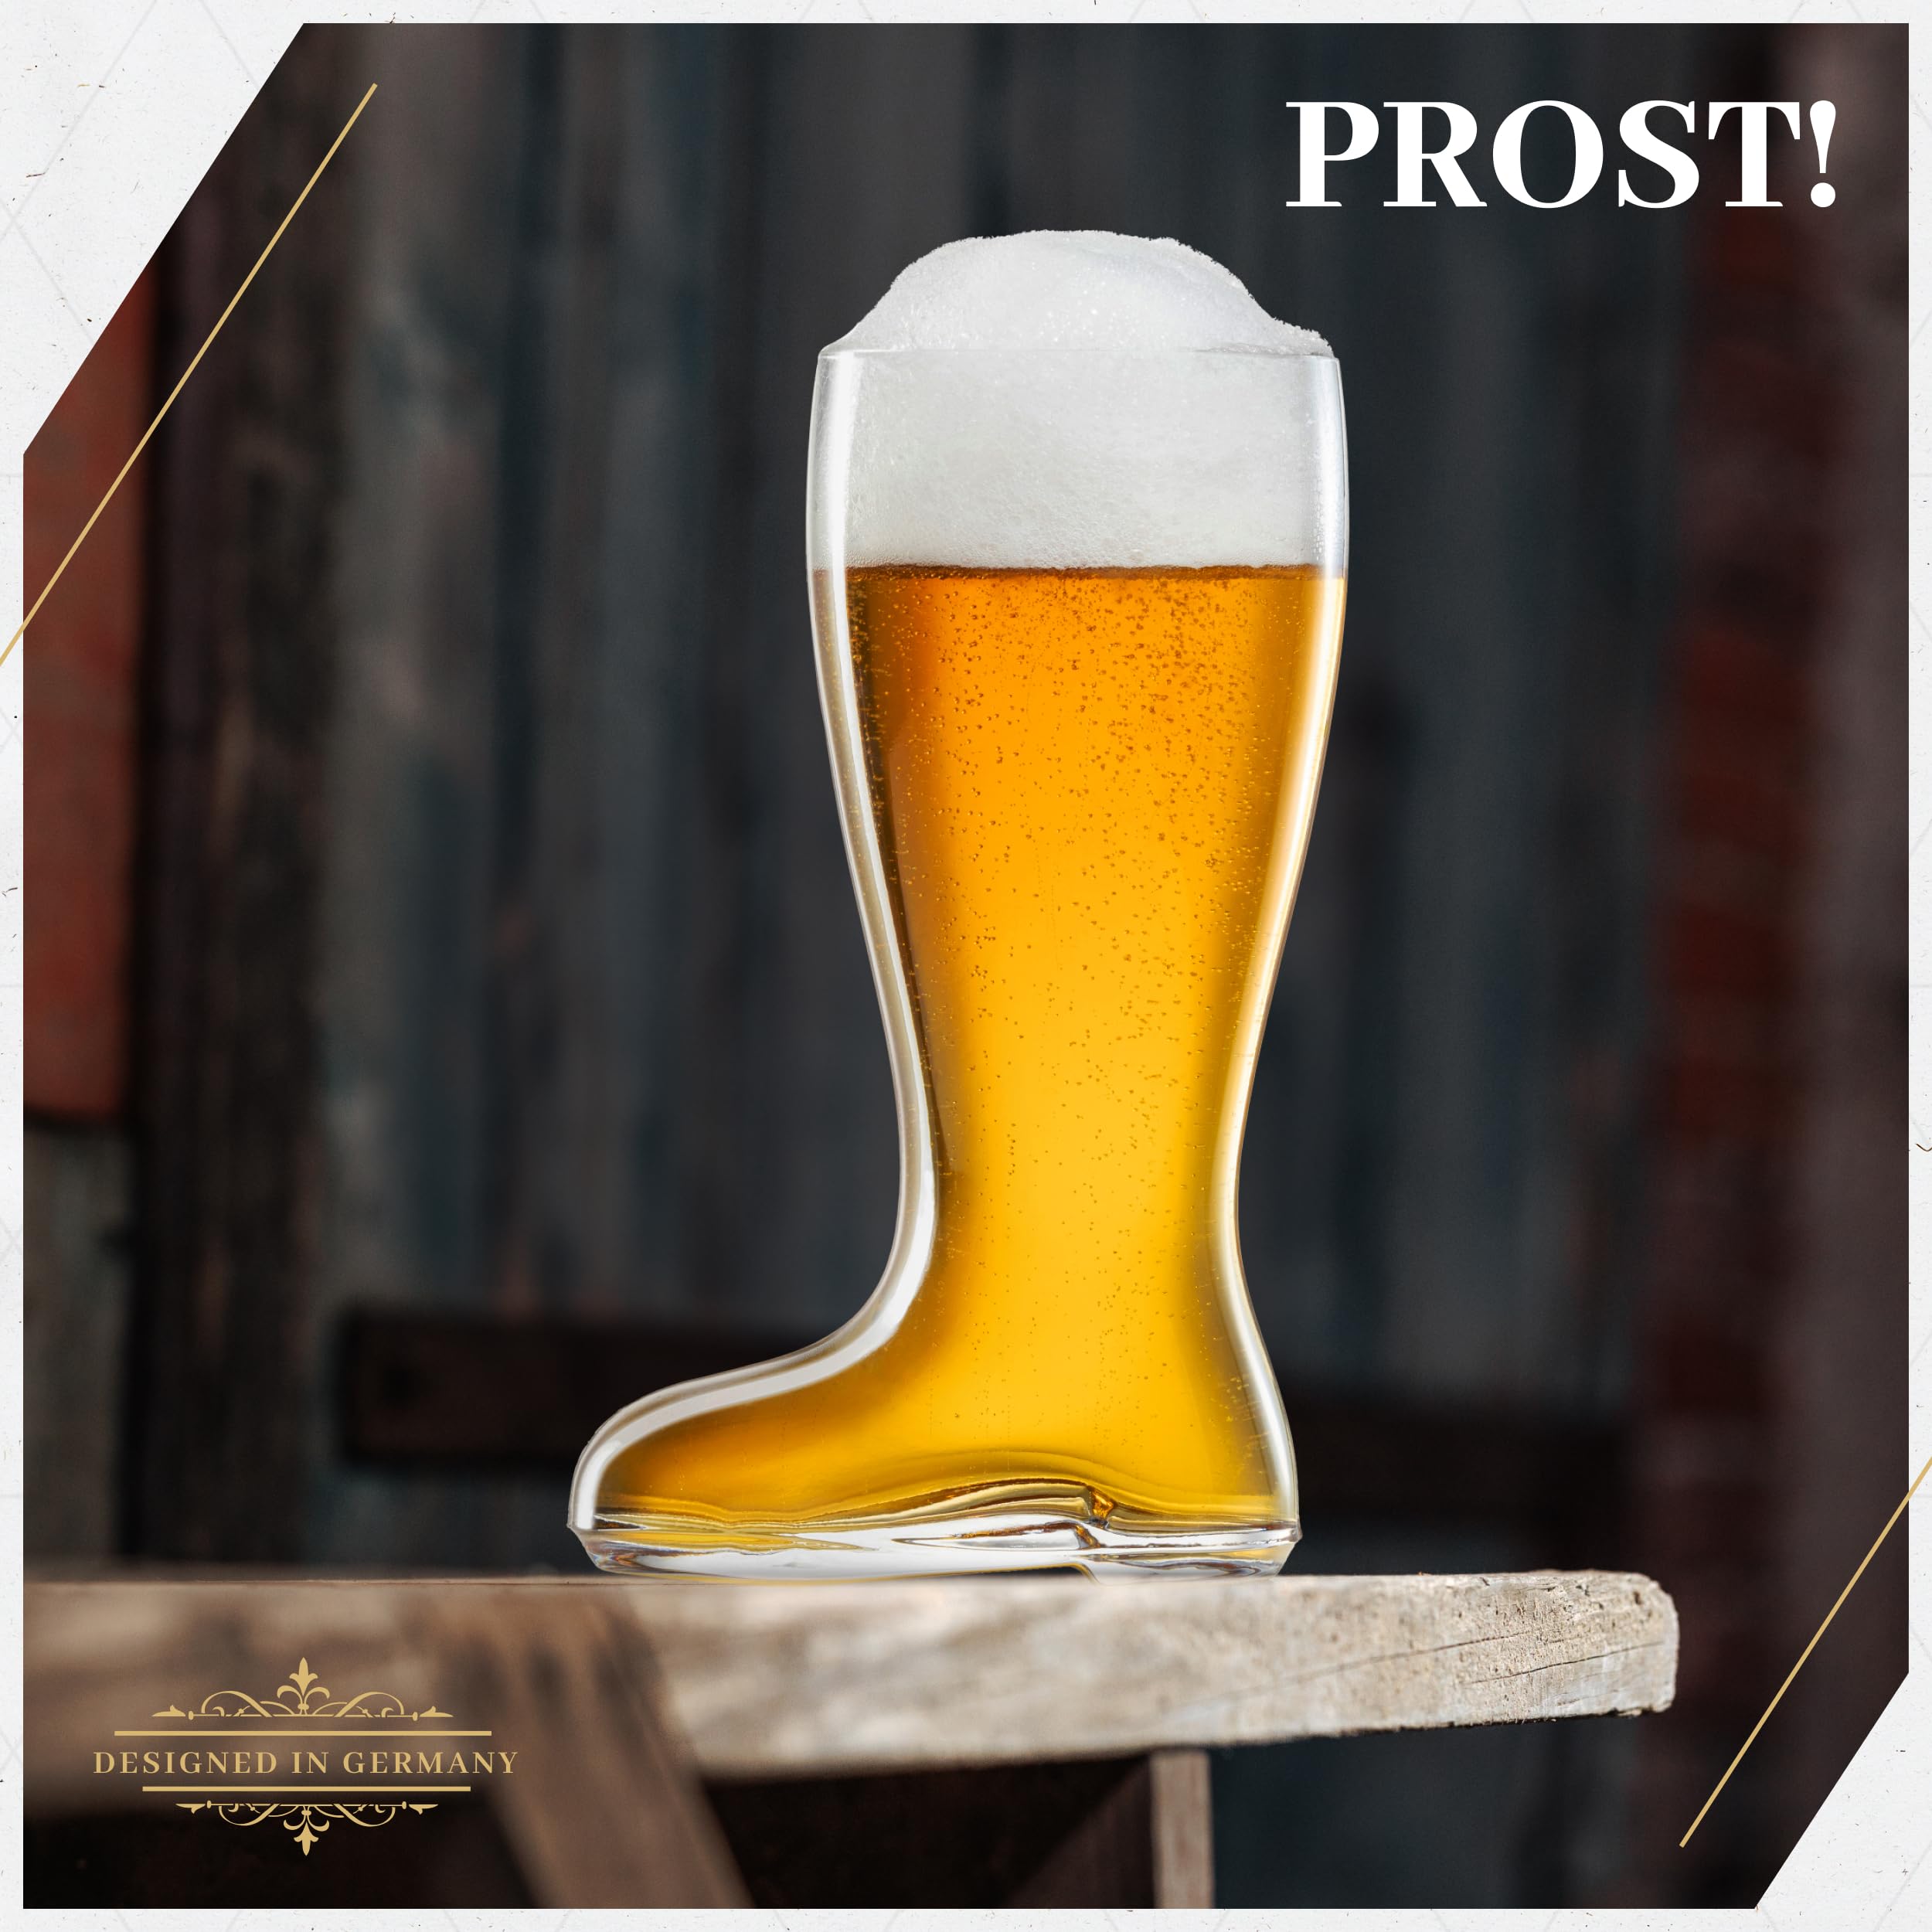 BAVARIA TRACHTEN DAS BOOT 1 Liter Beer Mug - Boot Mugs Glass - German Drinking Glass - Cowboy Boot Mugs - Original Das Boot Glass - Spaten Beer Mug